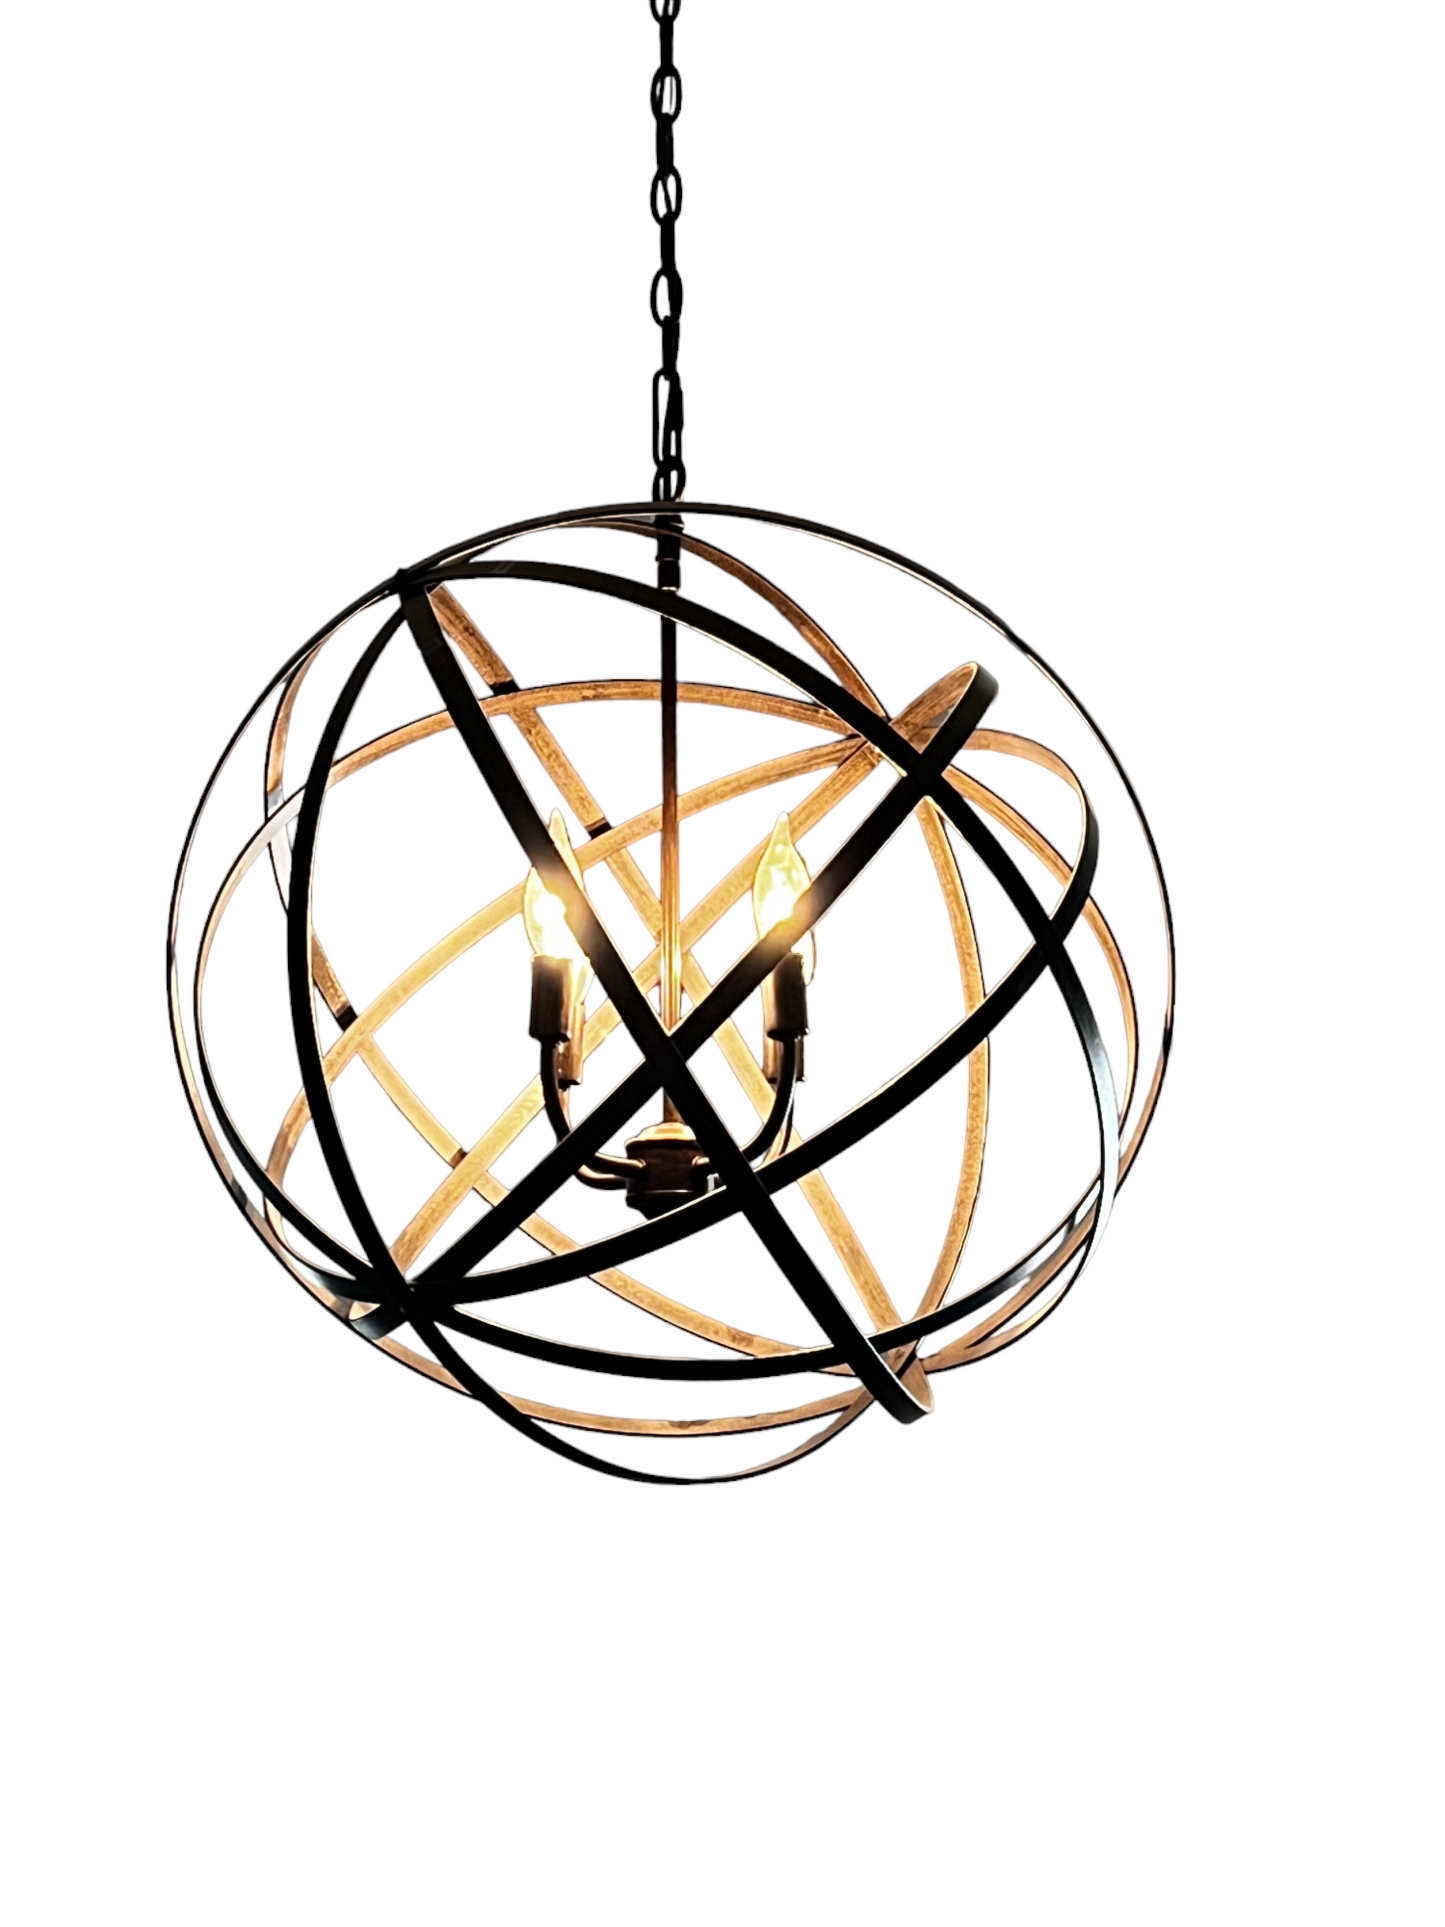 Large Metal Strap Globe Lantern - 4 LIGHT SP199-8